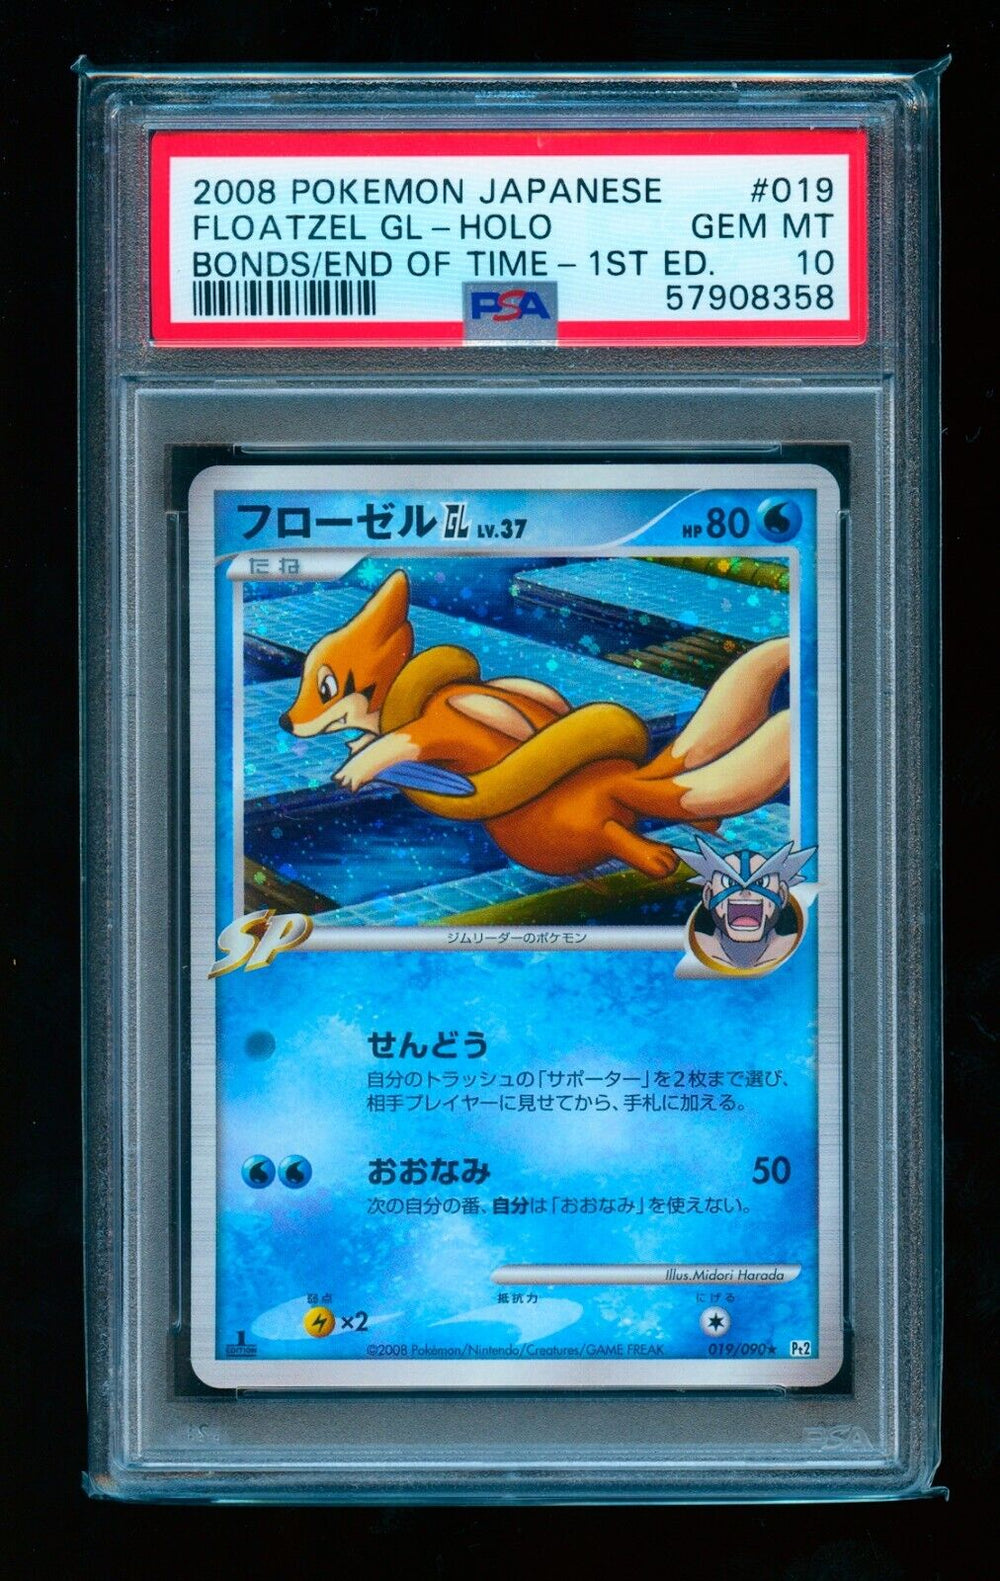 2008 Pokémon Japanese Bonds/End of Time 1st Edition #019 Floatzel GL PSA 10